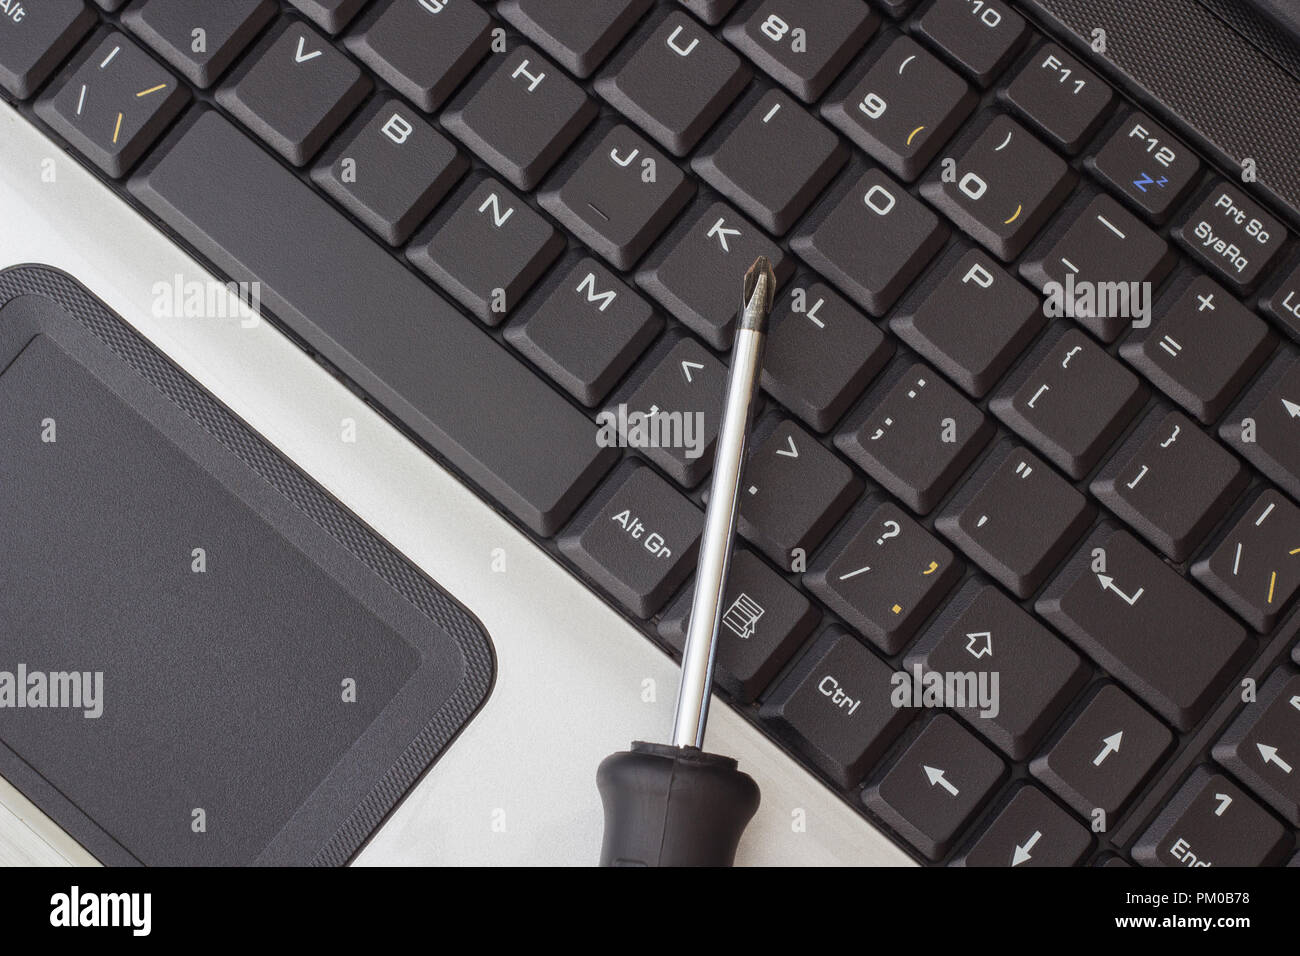 Schraubendreher auf Laptop Tastatur, das Konzept der Anlagen reparieren  Stockfotografie - Alamy